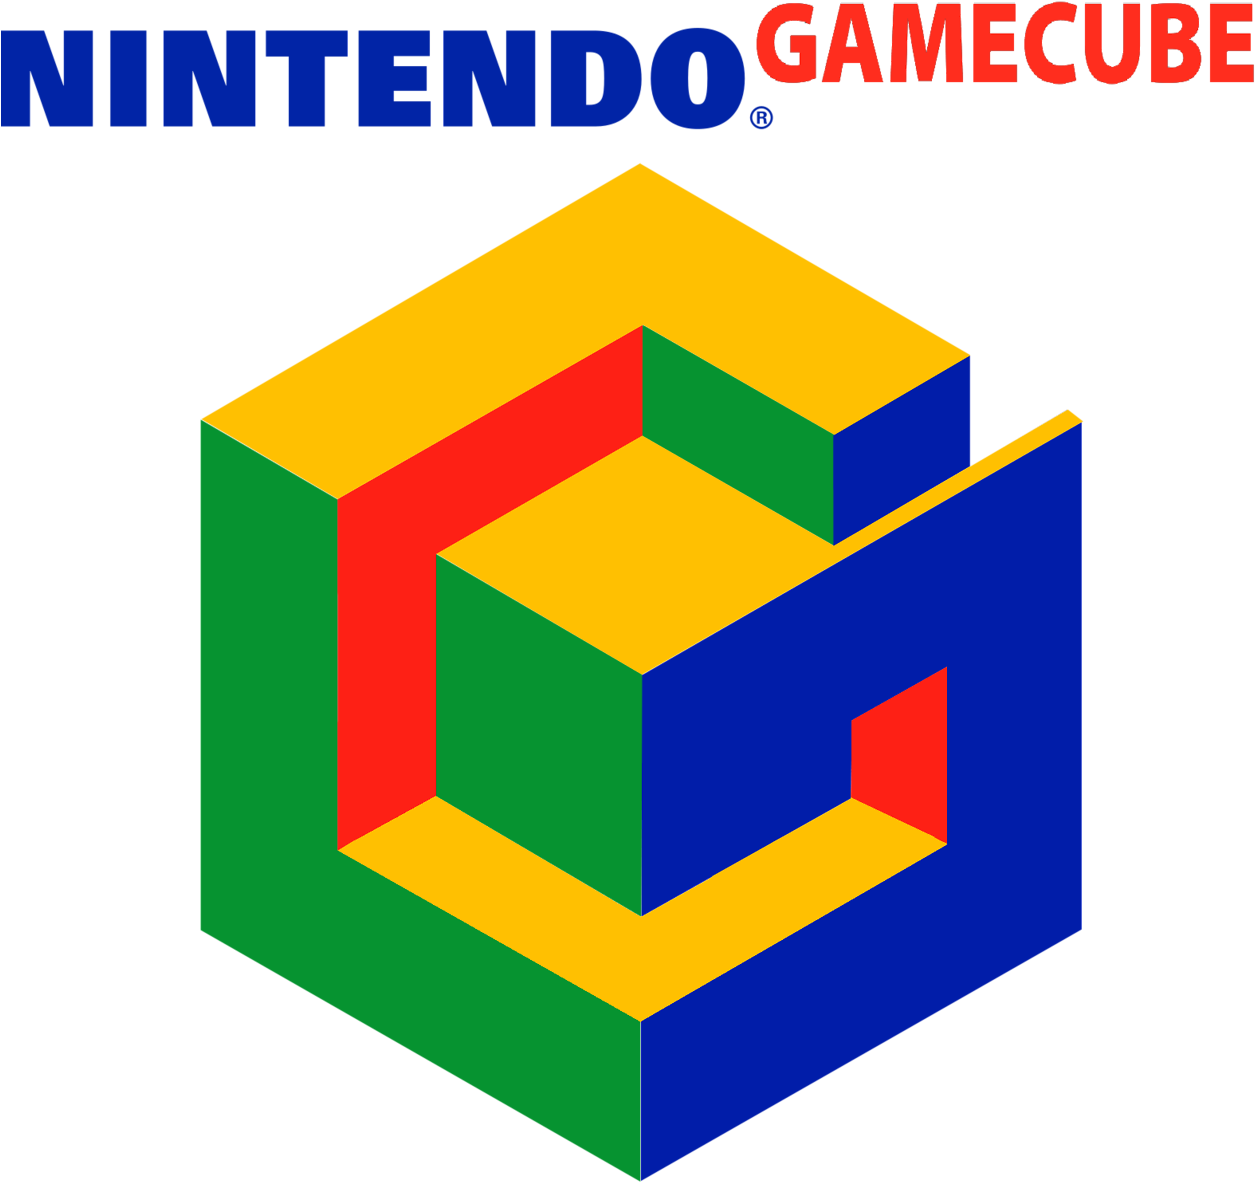 Nintendo 64 Wii Gamecube The Legend Of Zelda - Nintendo 64 Wii Gamecube The Legend Of Zelda (1280x1192)